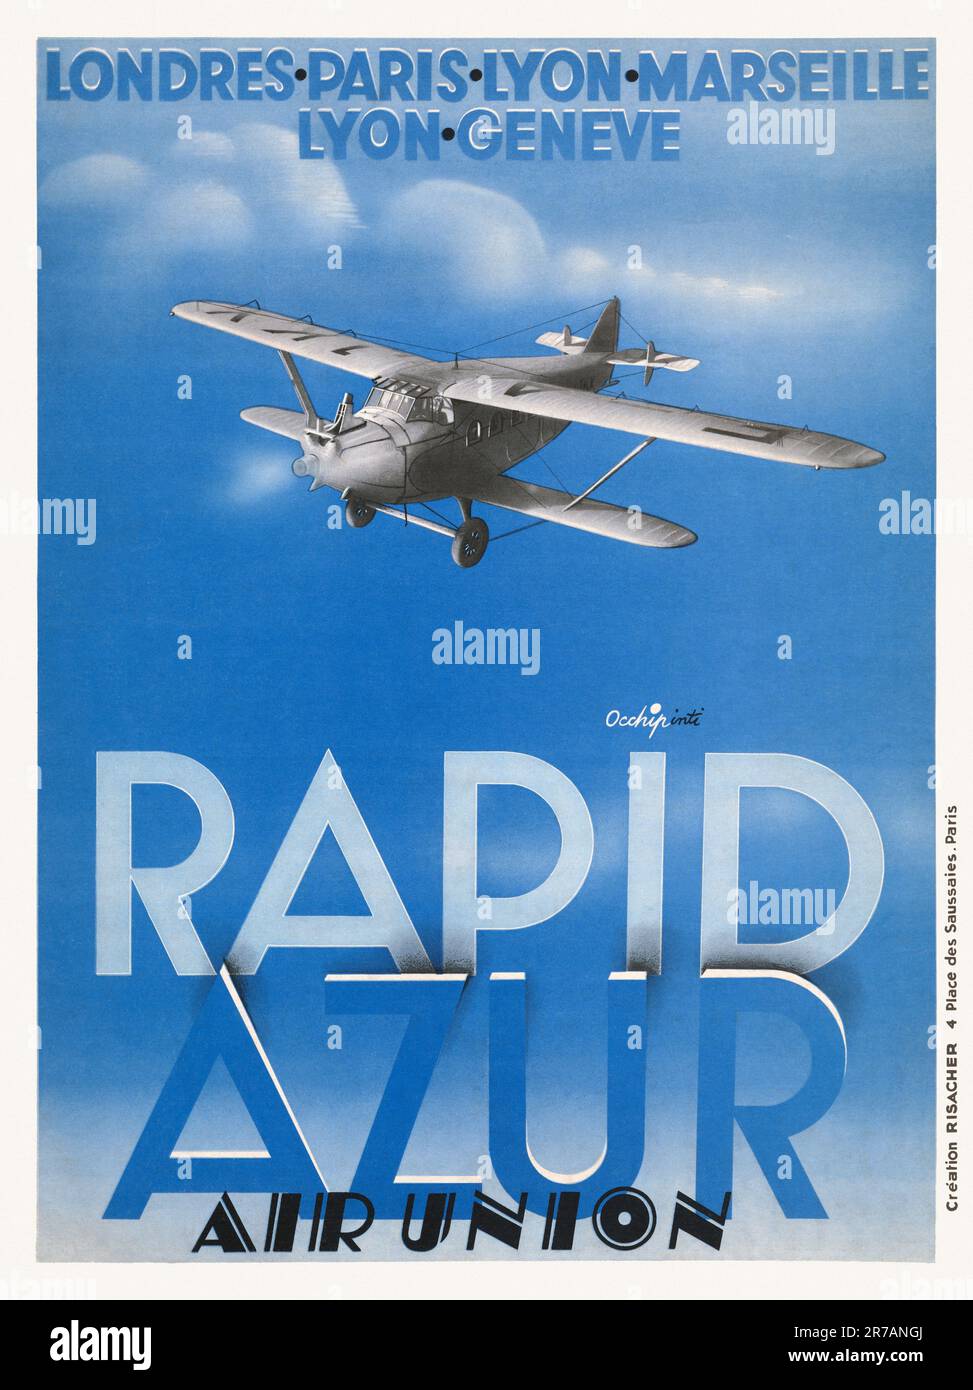 Schnell Azur. Luftanschluss. London, Paris, Lyon, Marseille, Lyon, Genève von Occhipinti (Datum unbekannt). Poster wurde 1932 in Frankreich veröffentlicht. Stockfoto